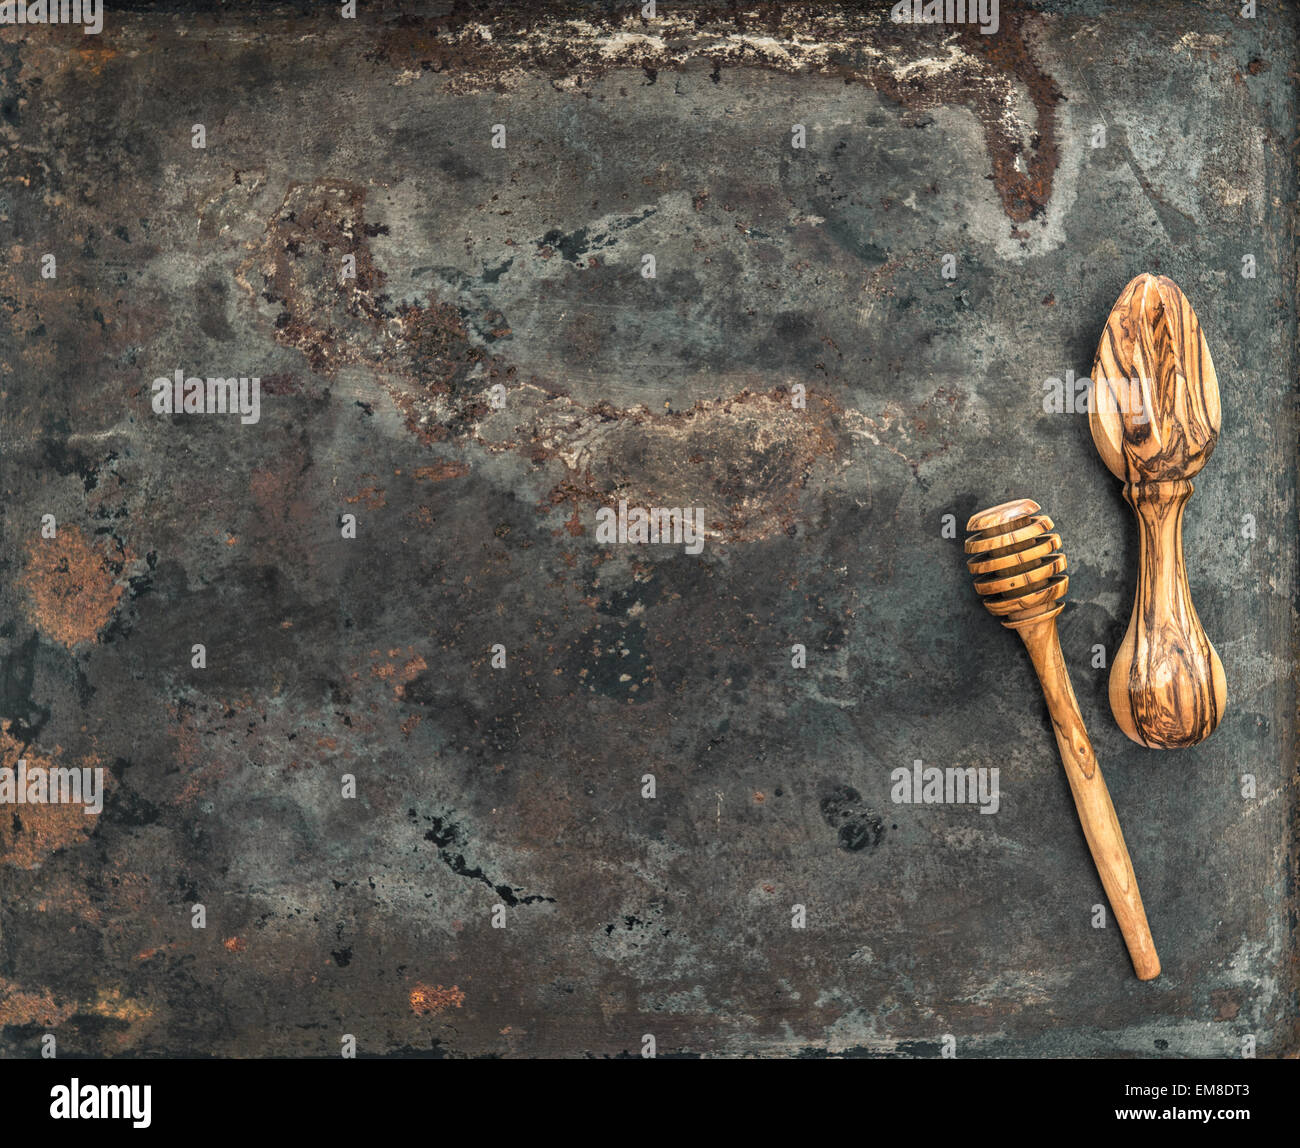 https://c8.alamy.com/comp/EM8DT3/wooden-kitchen-utensils-on-rusted-metal-plate-background-vintage-tools-EM8DT3.jpg